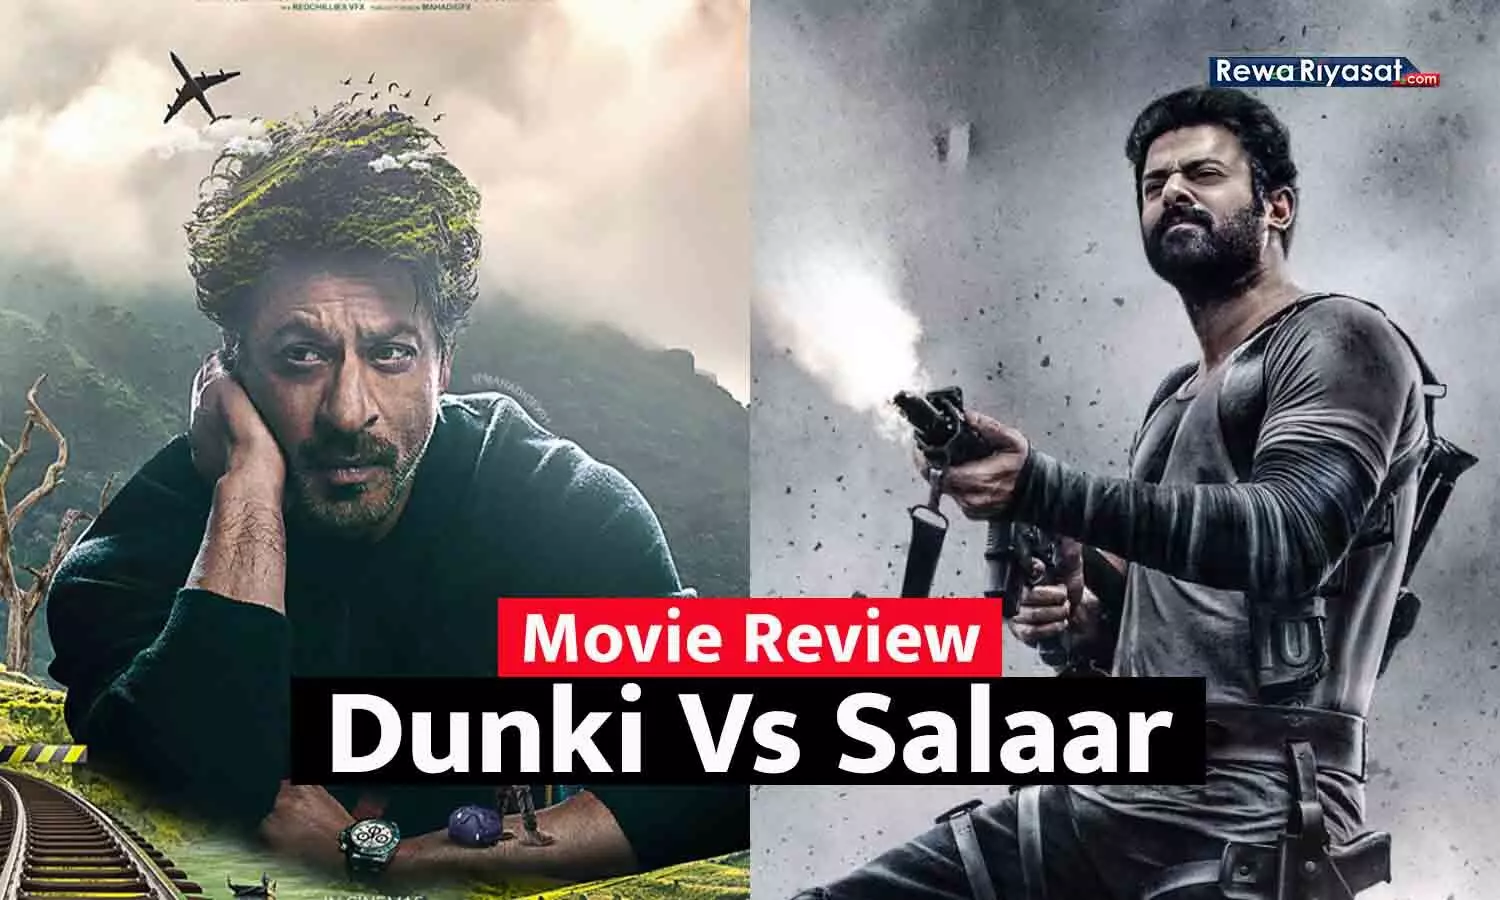 Dunki Vs Salaar Movie Review: शाहरुख खान की डंकी के बाद प्रभास की सालार रिलीज हुई, जानिए कौन सी फिल्म देखने लायक है?